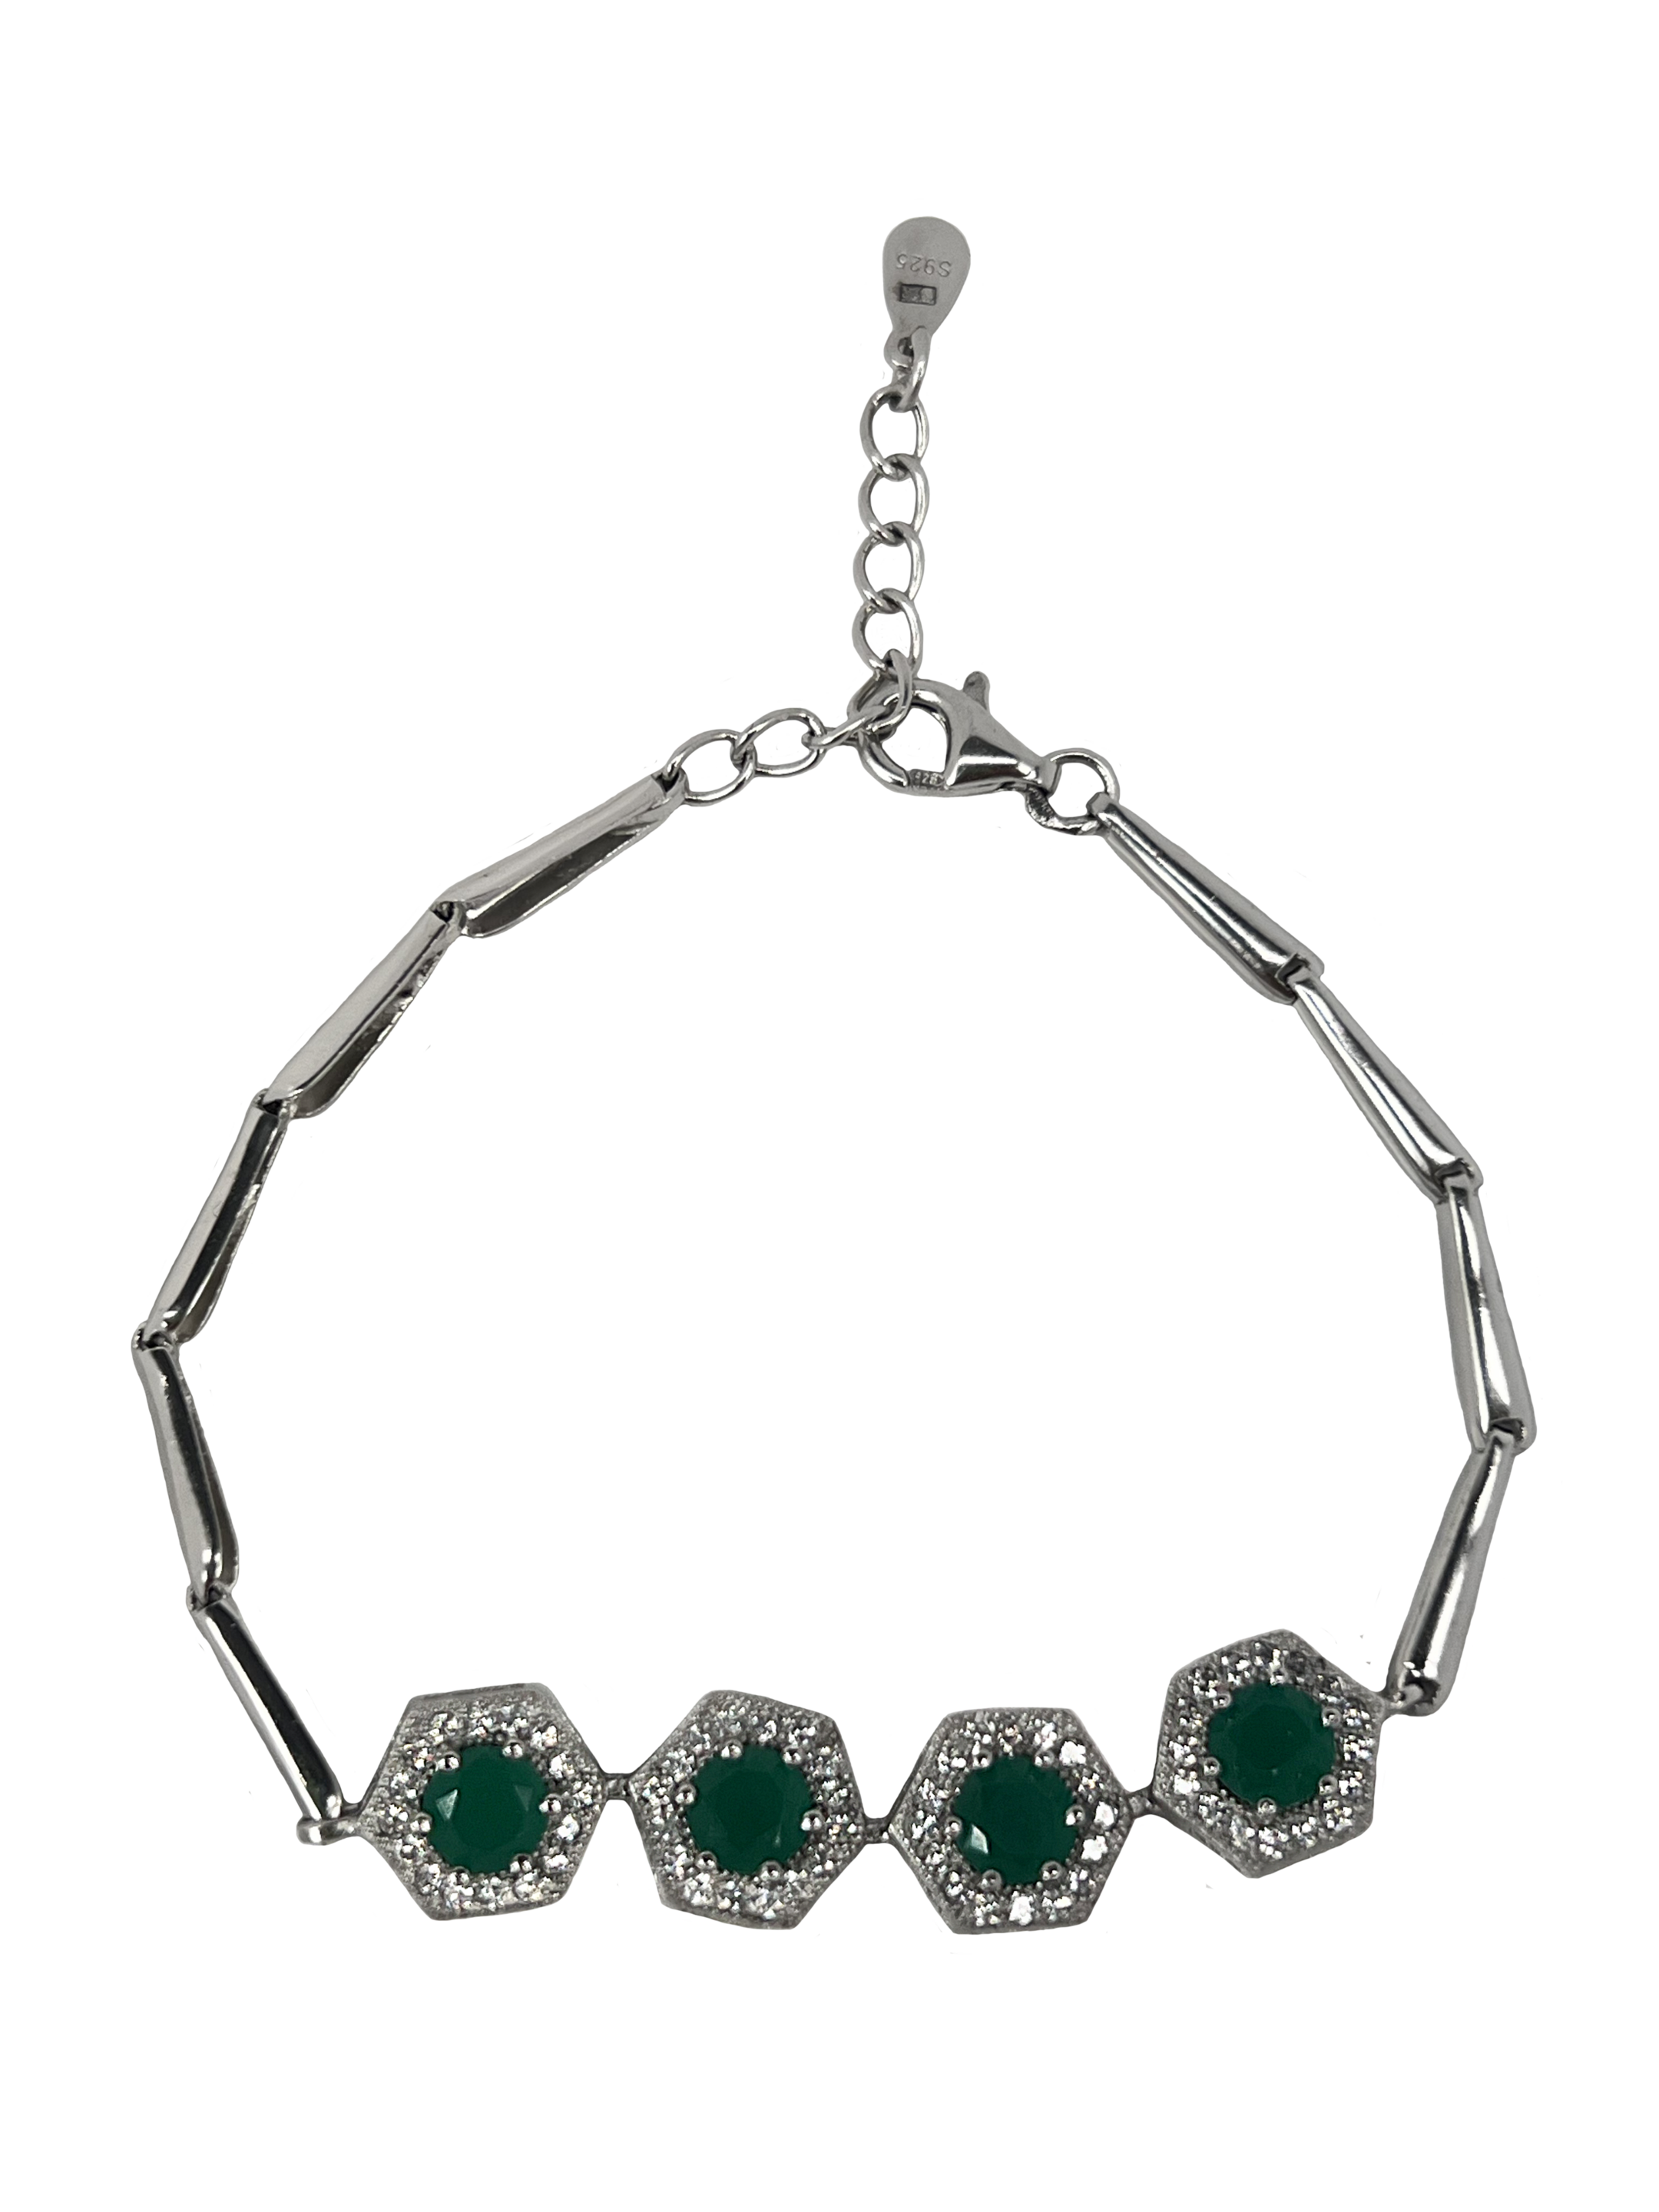 Bracelet en argent avec cristaux verts